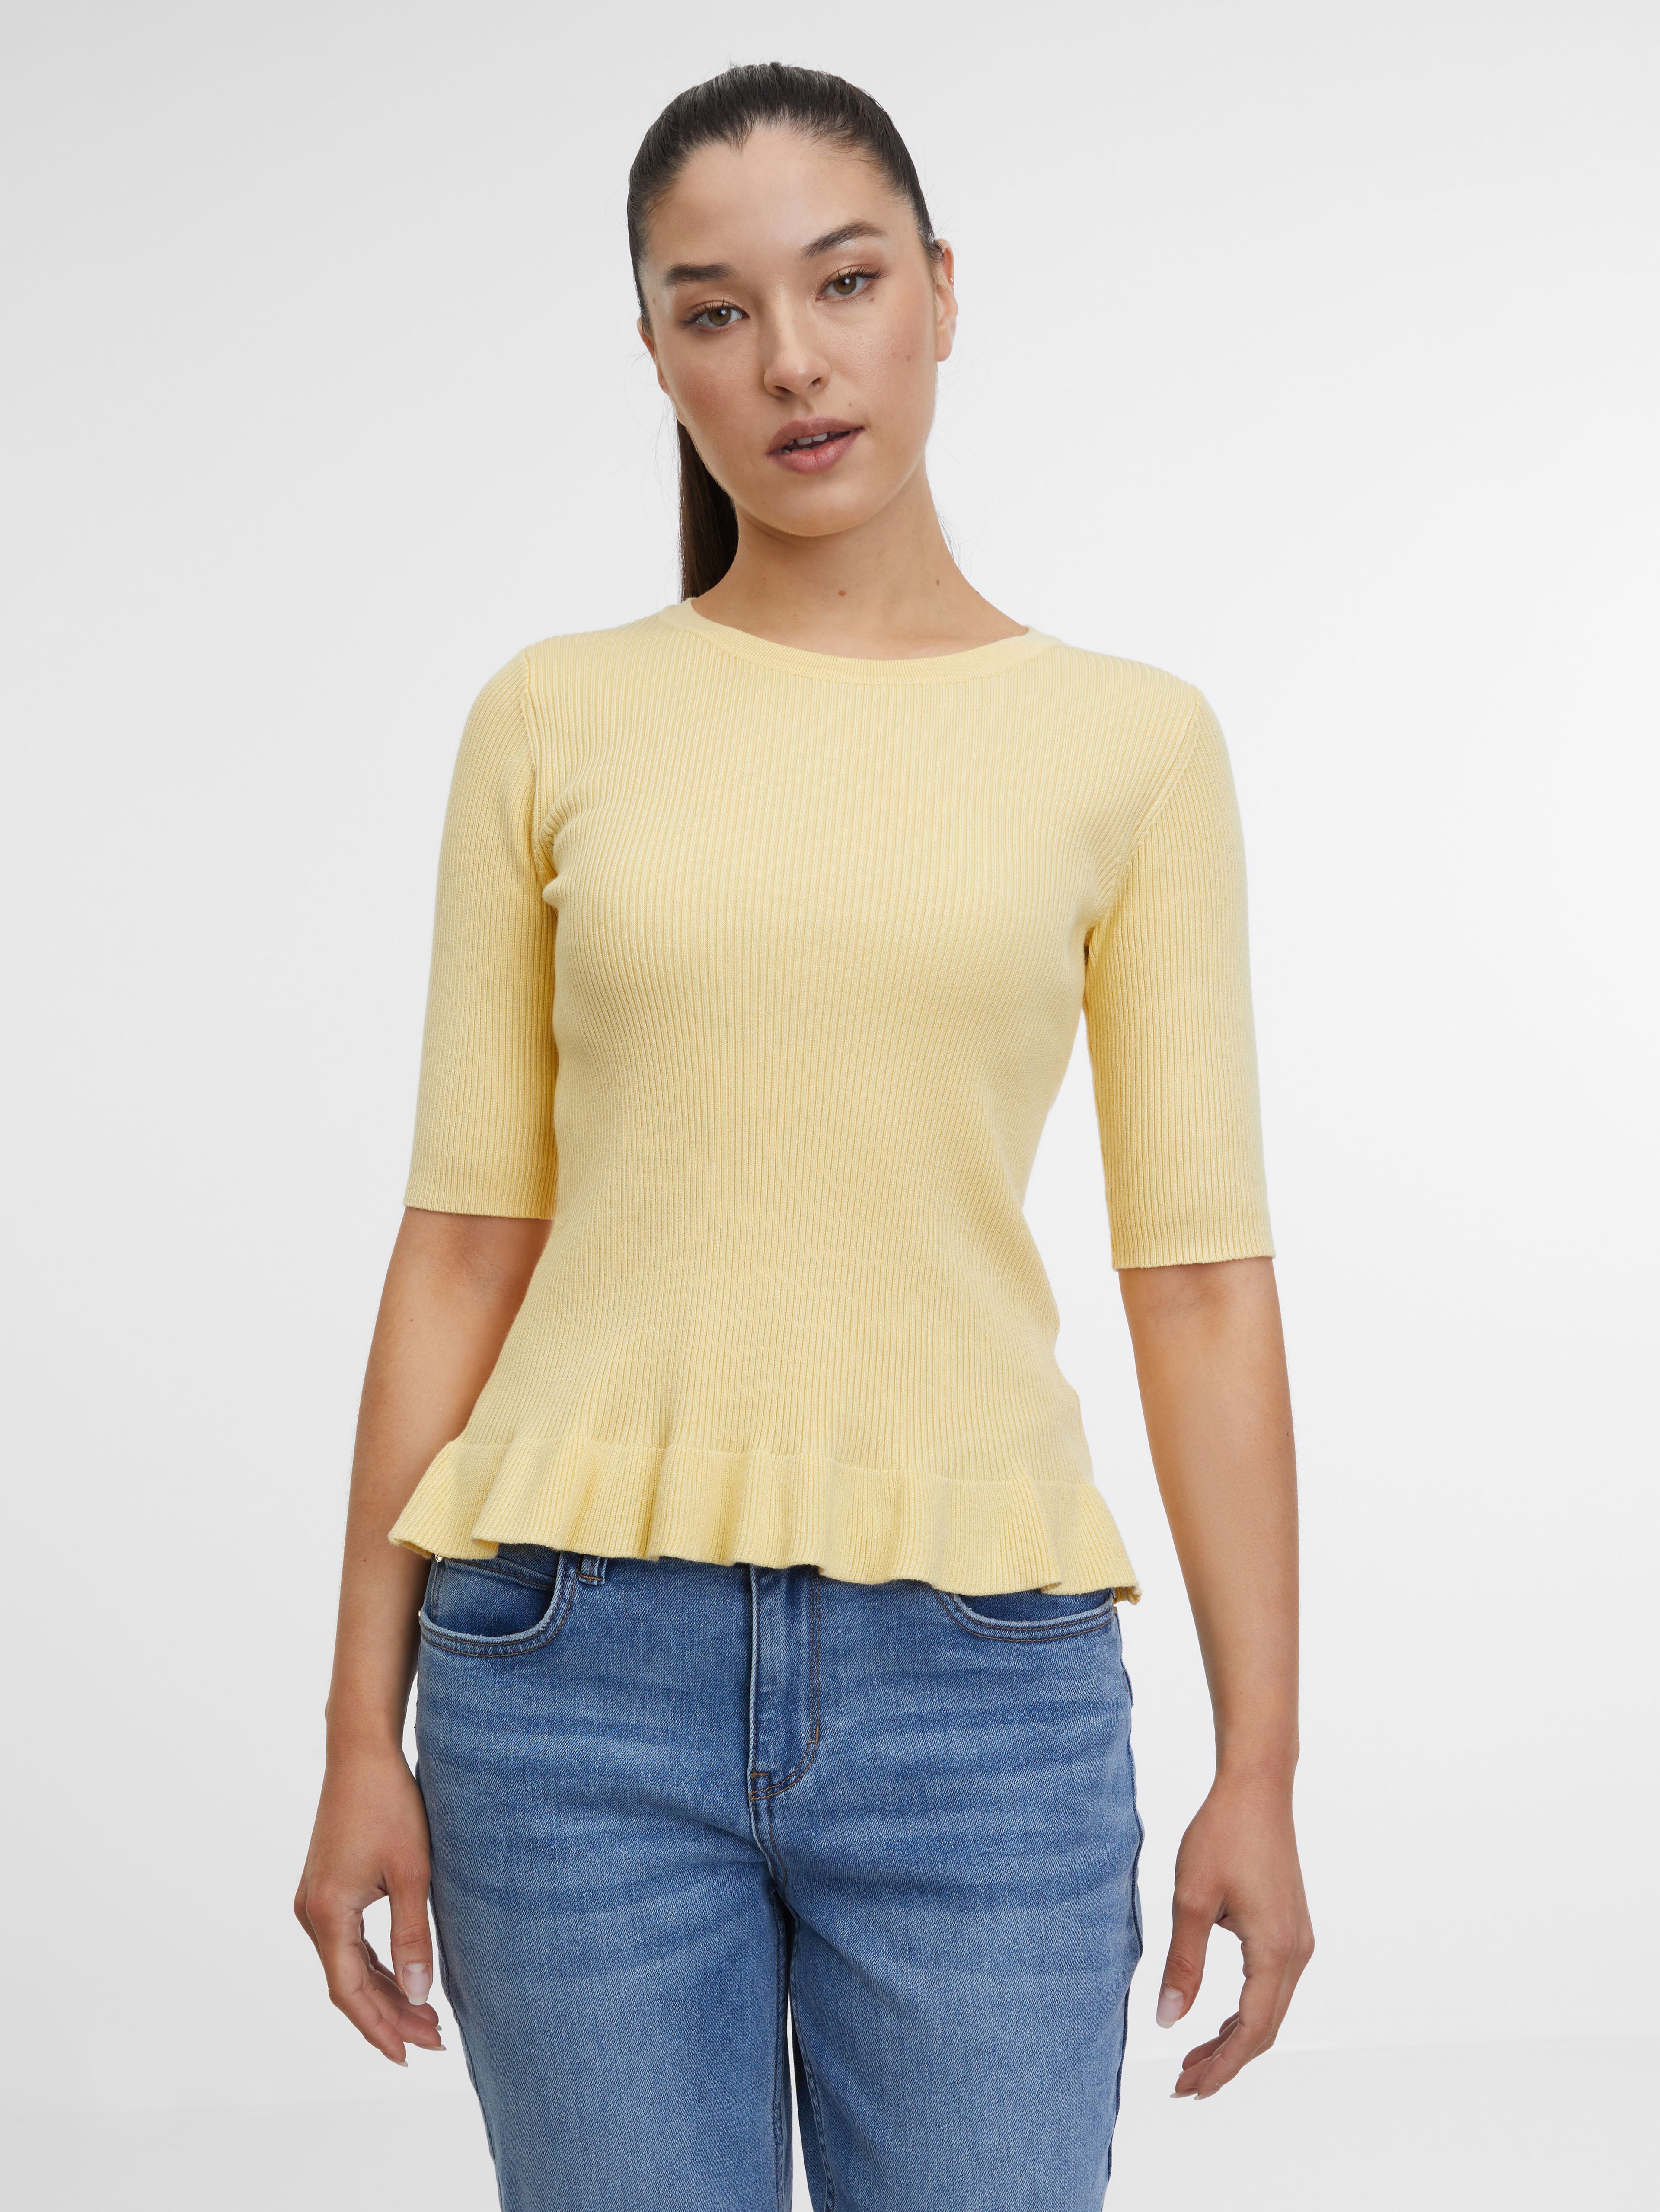 Žlté dámske tričko ORSAY